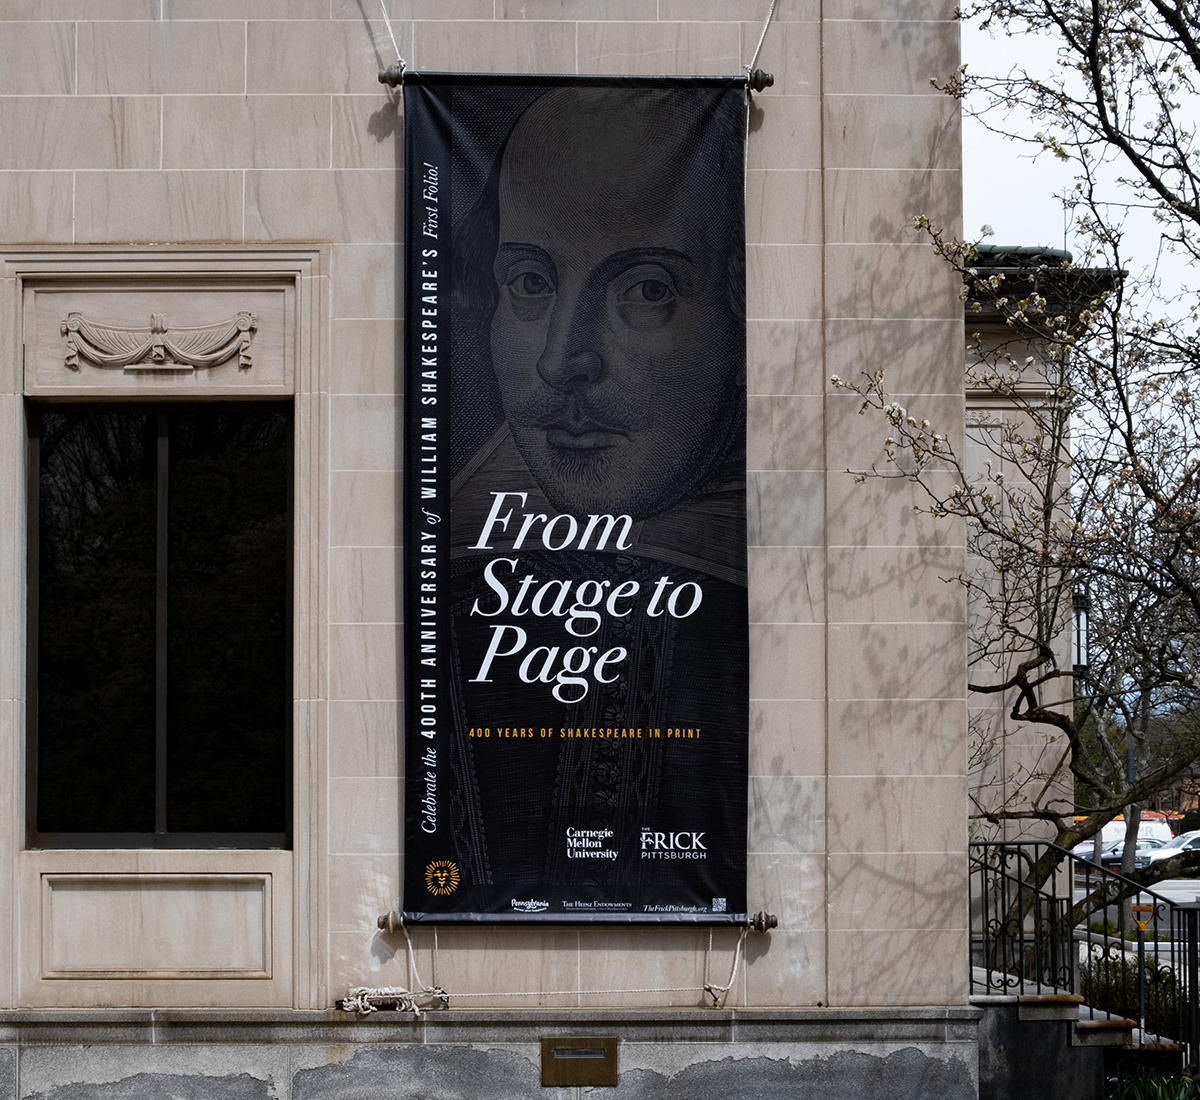 Detail of an external banner on the façade of the Frick Art Museum.